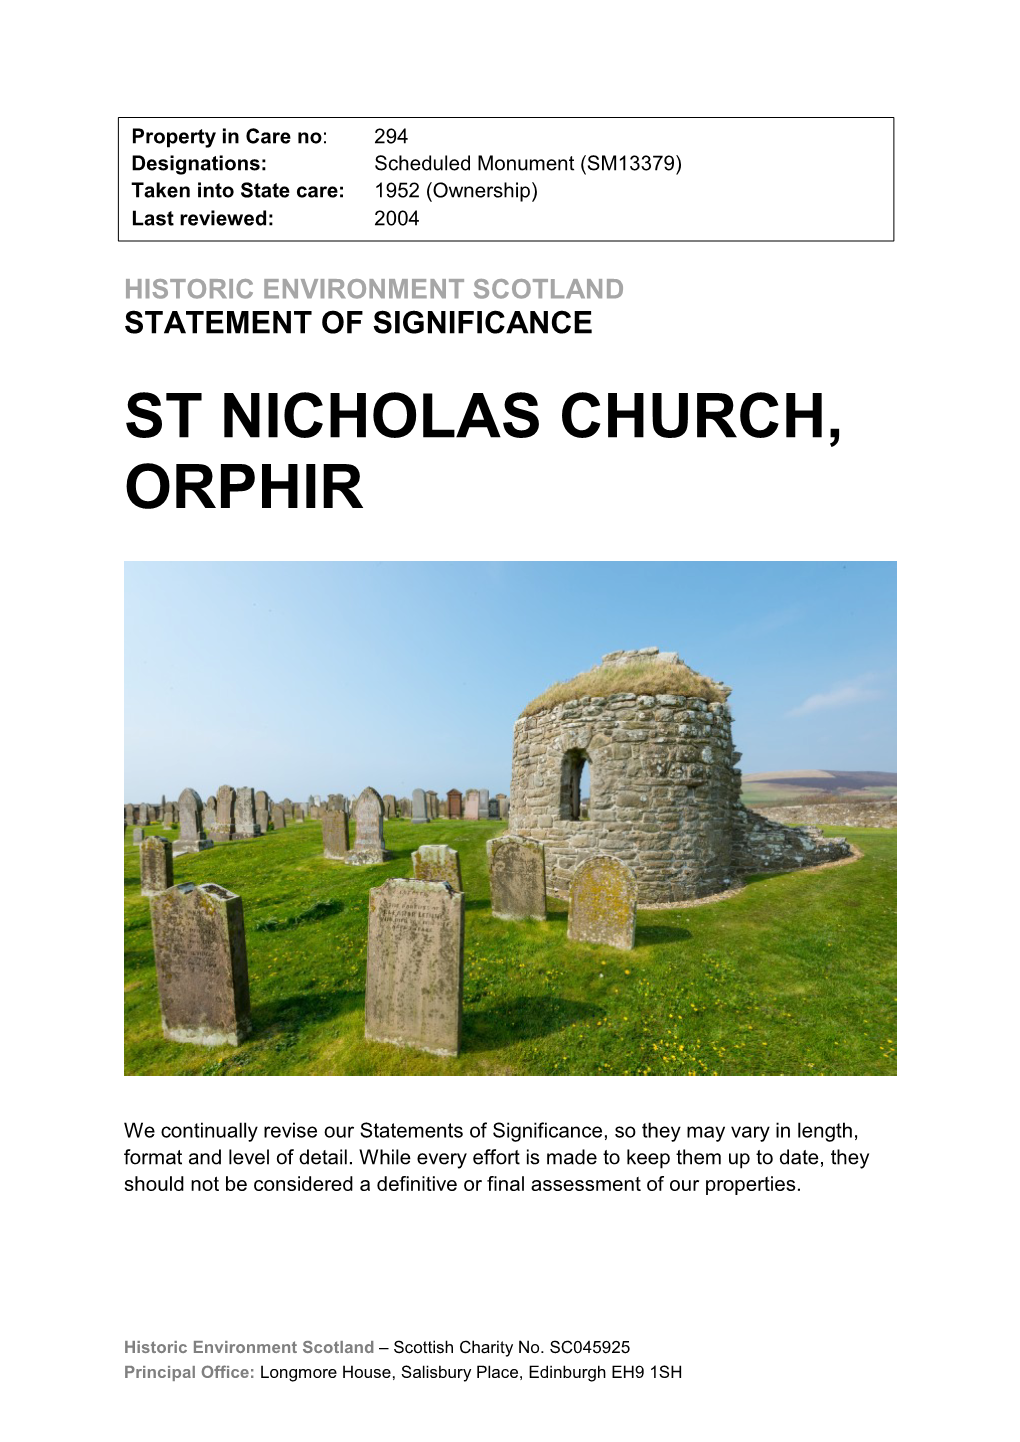 St Nicholas Church, Orphir